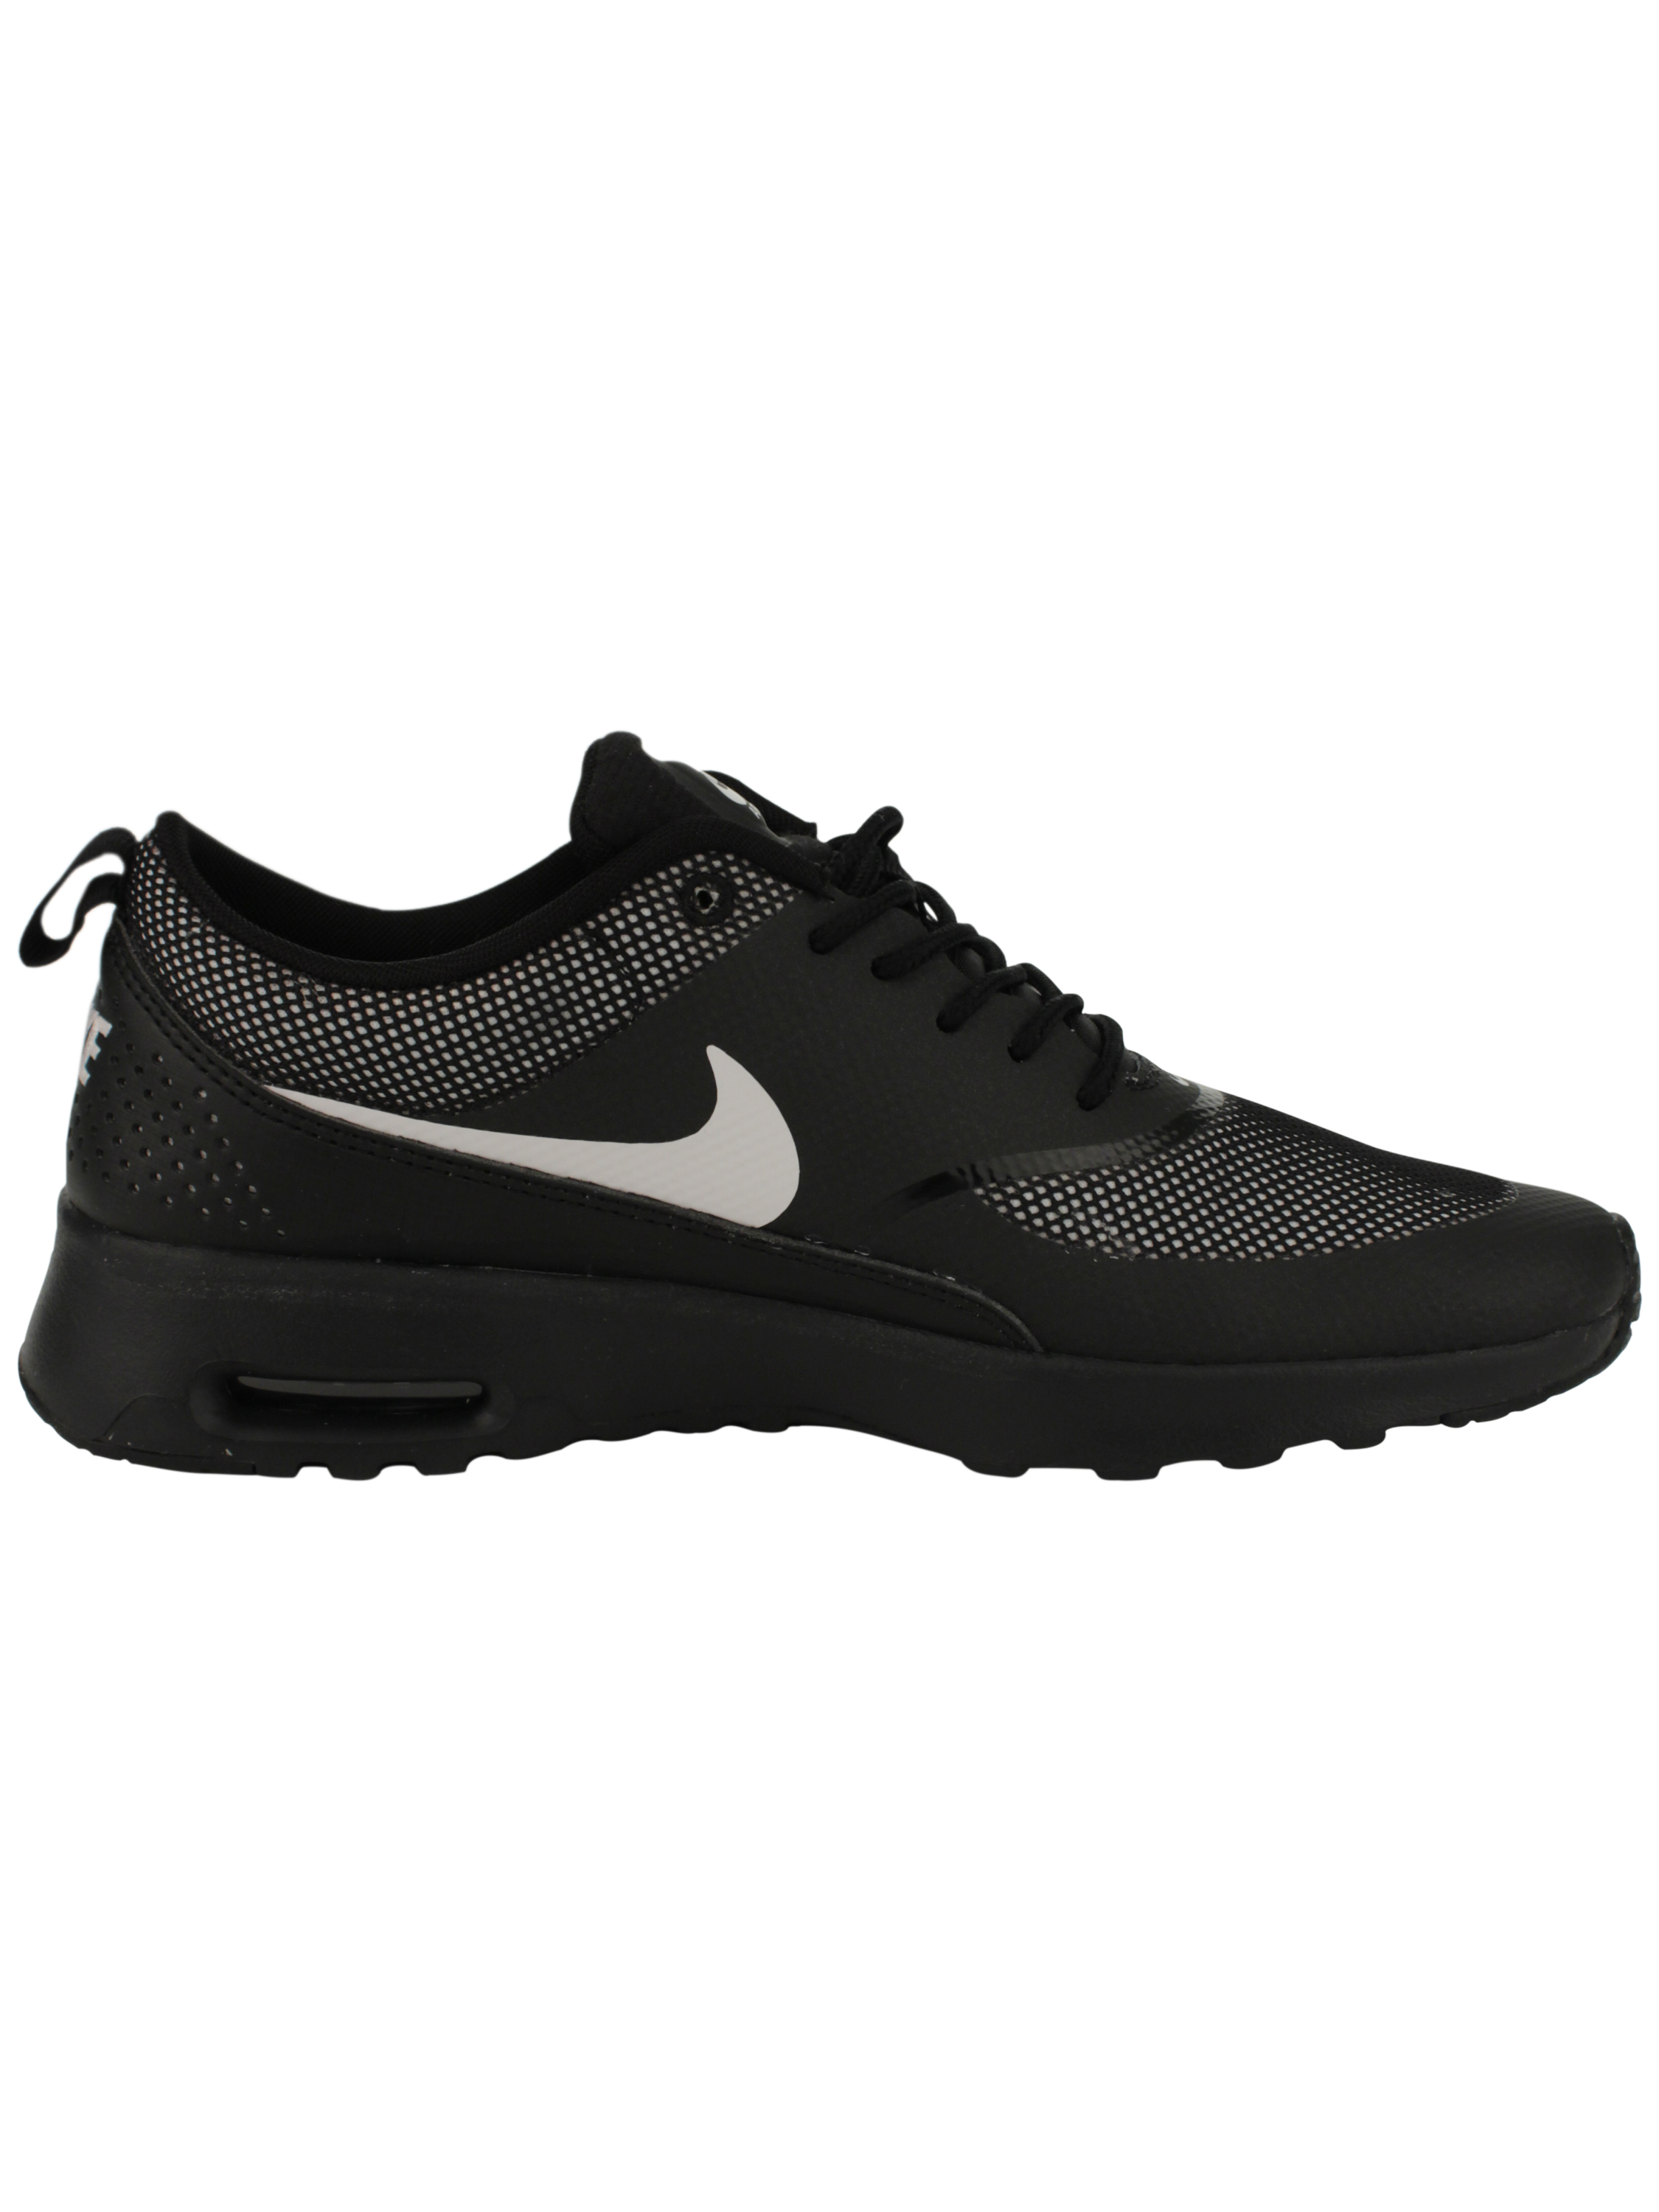 Osta Nike 'Air Max Thea' Shoes - Black